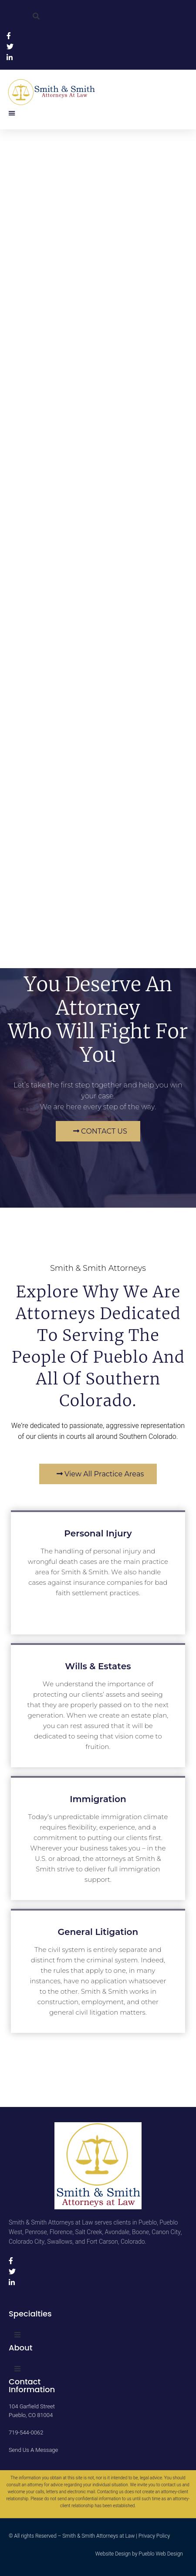 Smith, Mickey W - Pueblo CO Lawyers